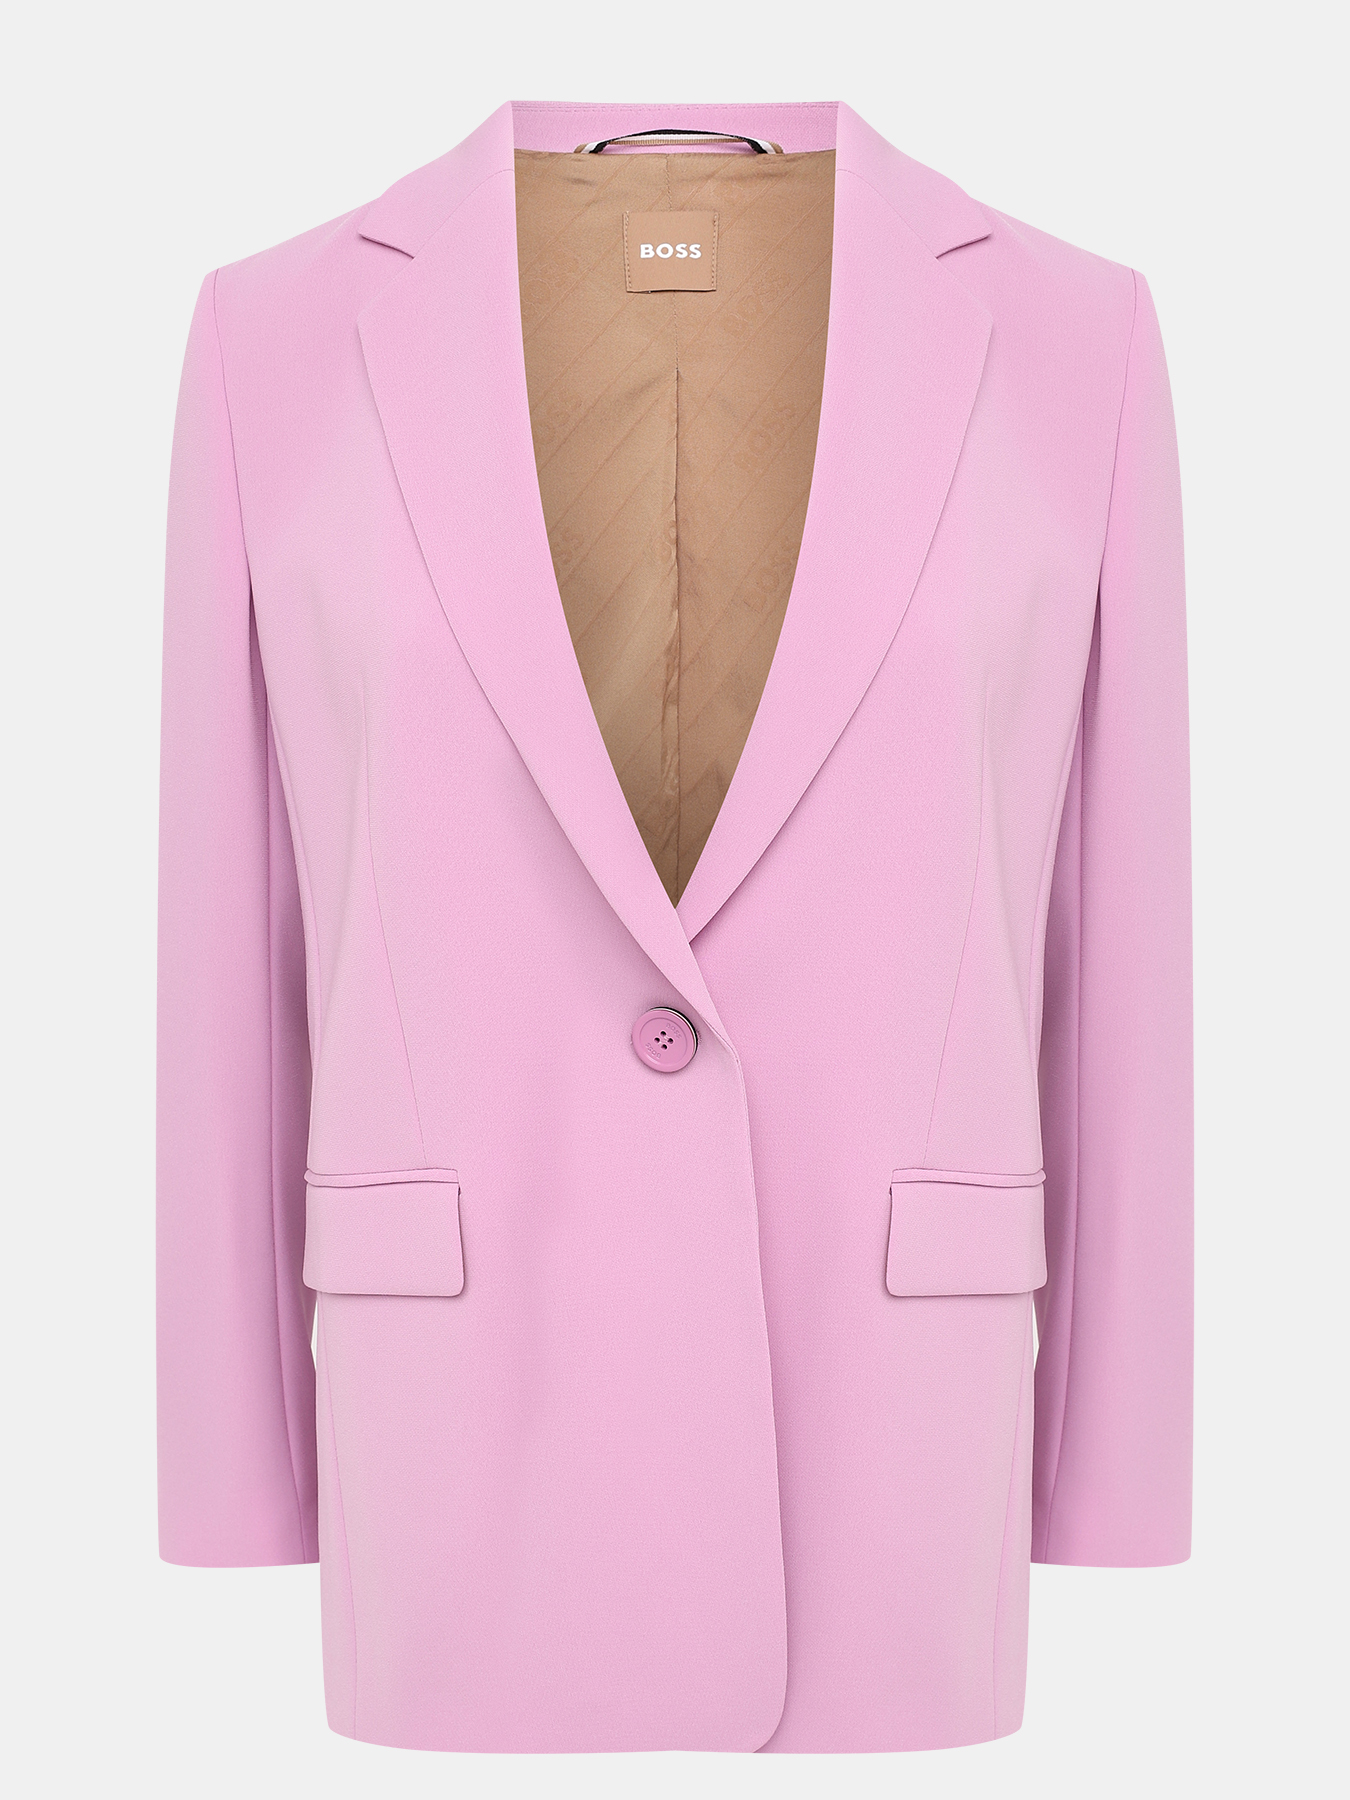 Пиджак Jocalua BOSS 434141-022, цвет розовый, размер 48